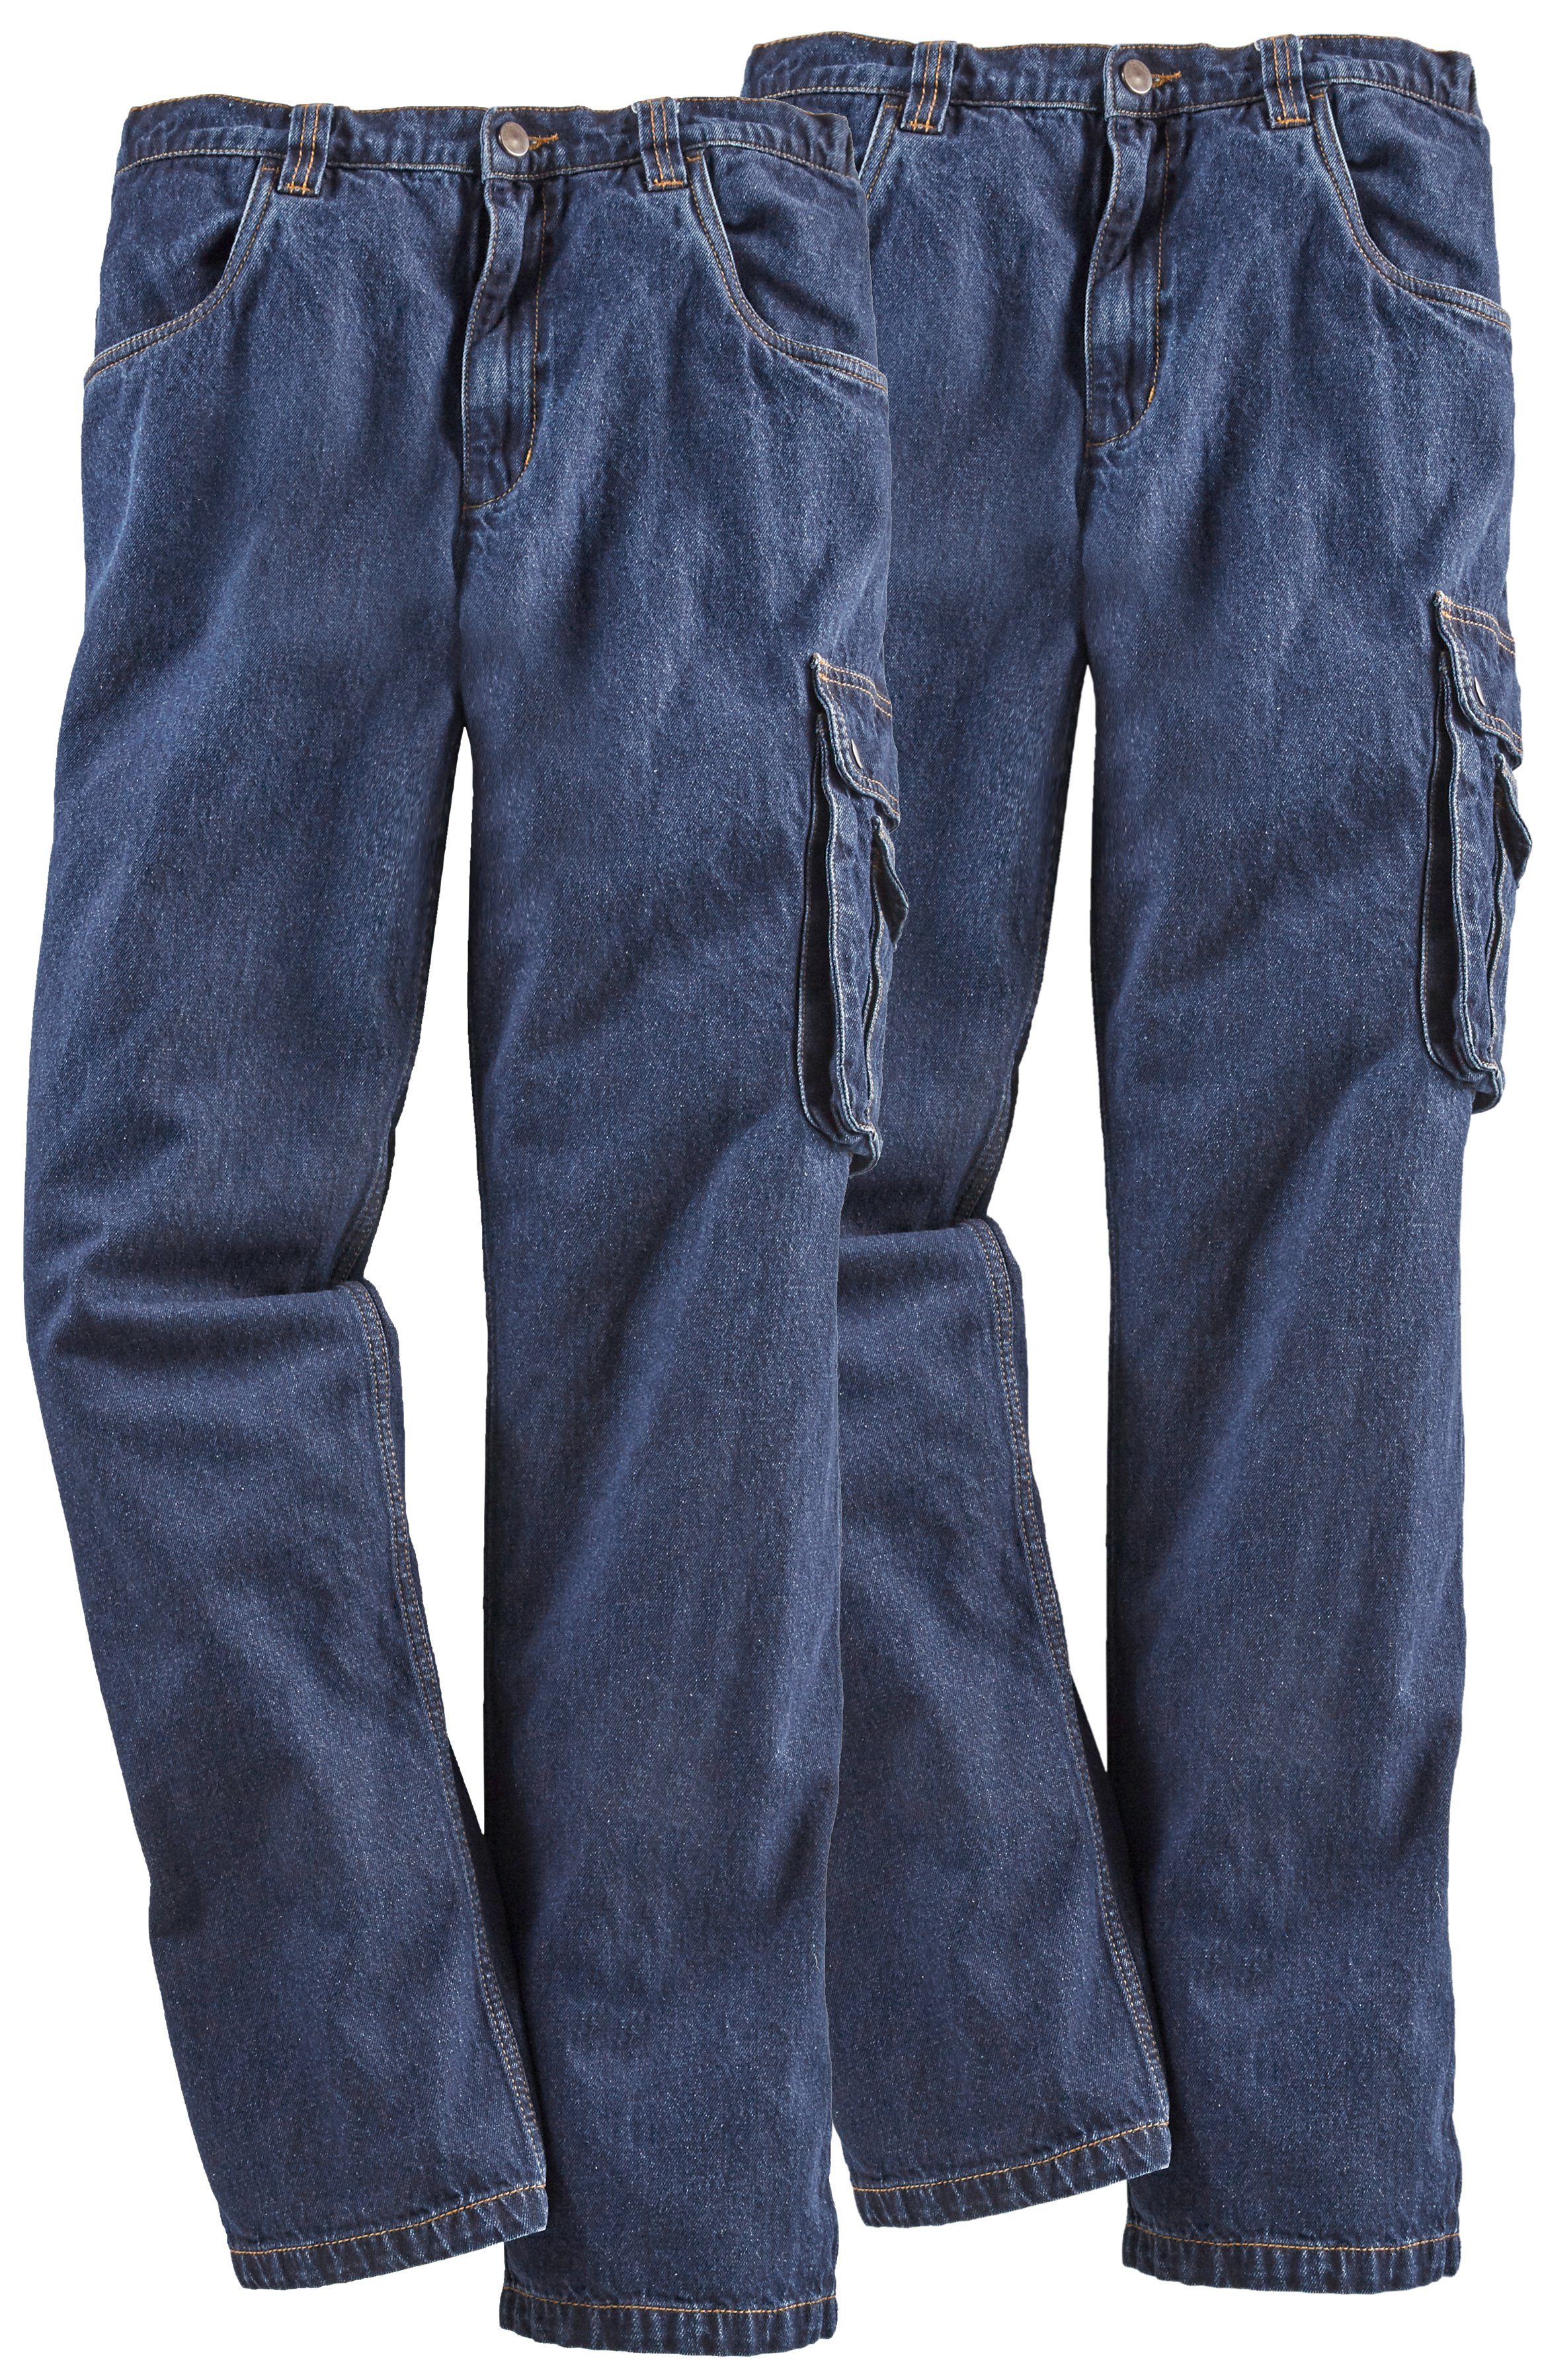 Northern Country Arbeitshose »Jeans Worker« (2-tlg., 2er-Pack) 2er Spar-Set  Arbeitjeans mit dehnbarem Bund, robuste Jeanshose aus 100% Baumwolle, mit 8  praktischen Taschen, komfortable Passform online kaufen | OTTO